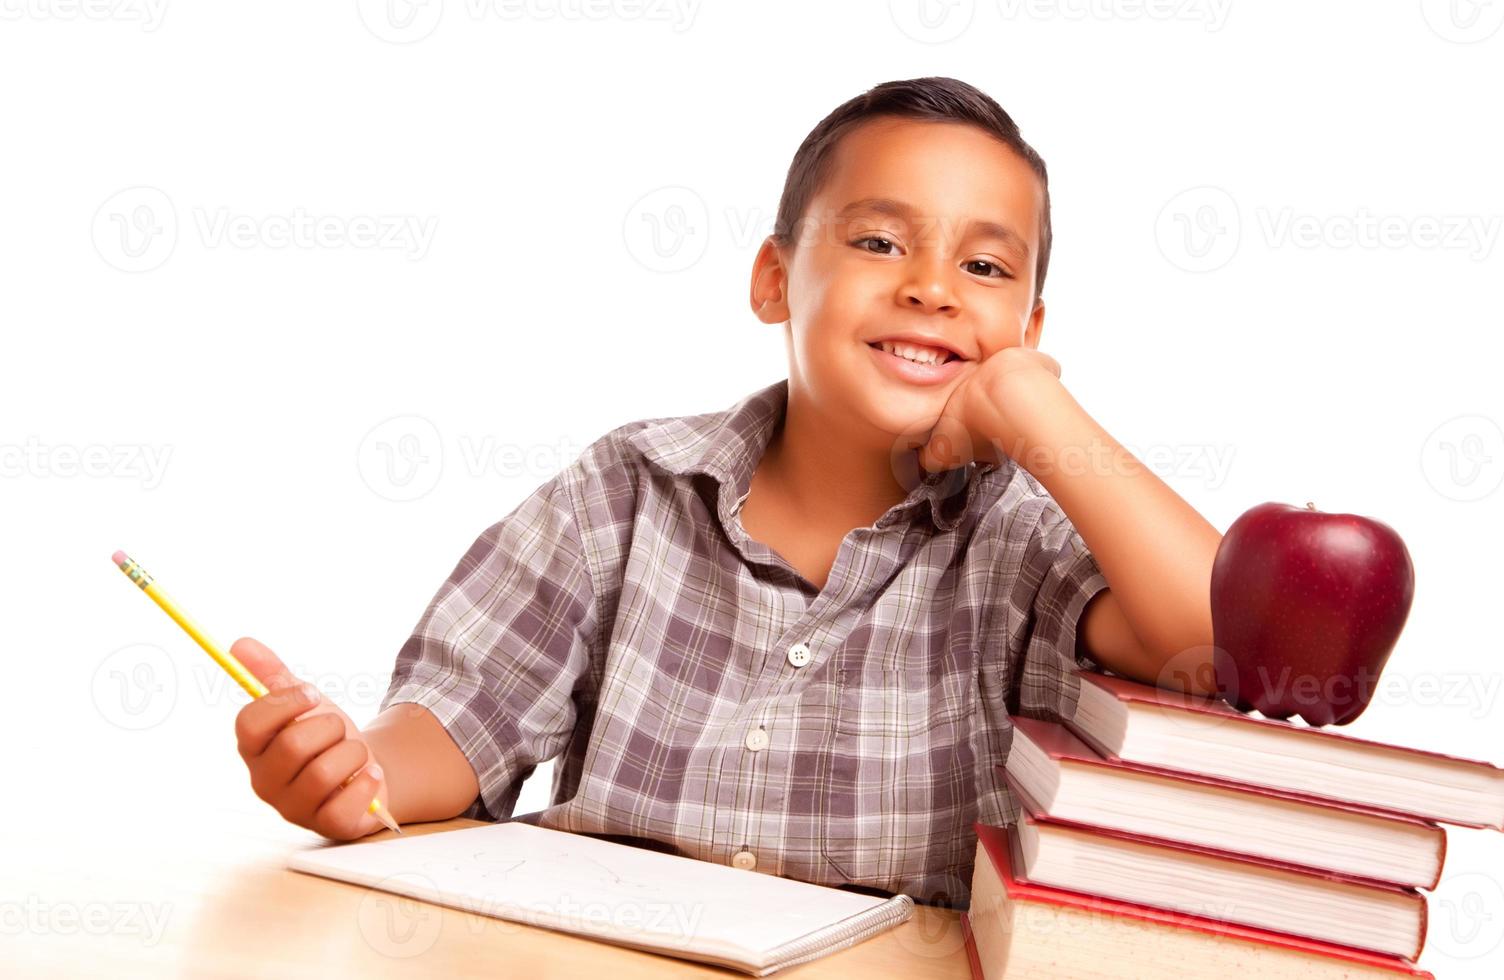 adorable niño hispano con libros, manzana, lápiz y papel foto